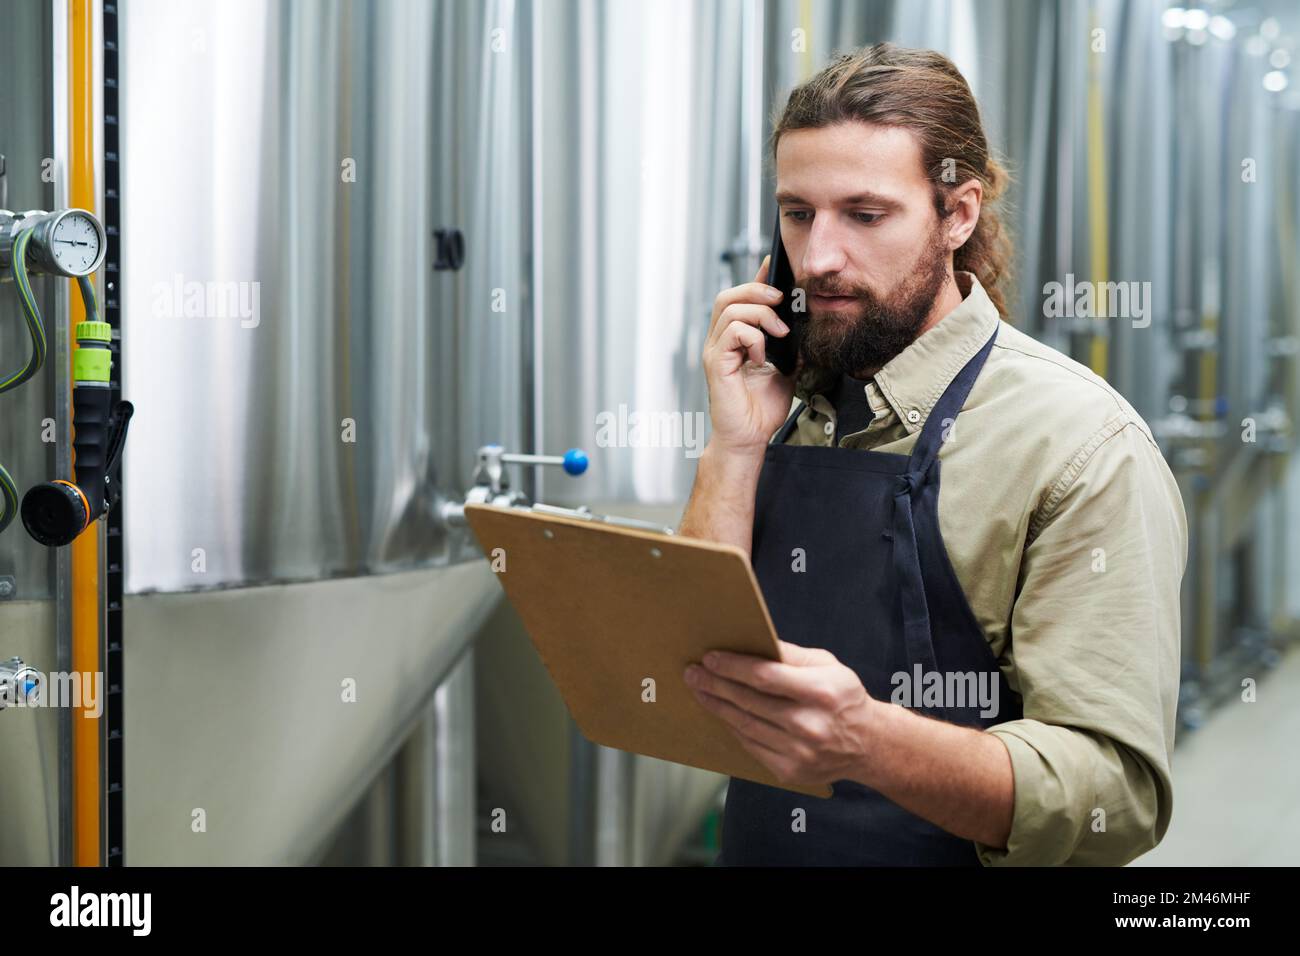 Retrato del propietario de la cervecería hablando por teléfono y pidiendo cebada malteada, lúpulo y levadura Foto de stock